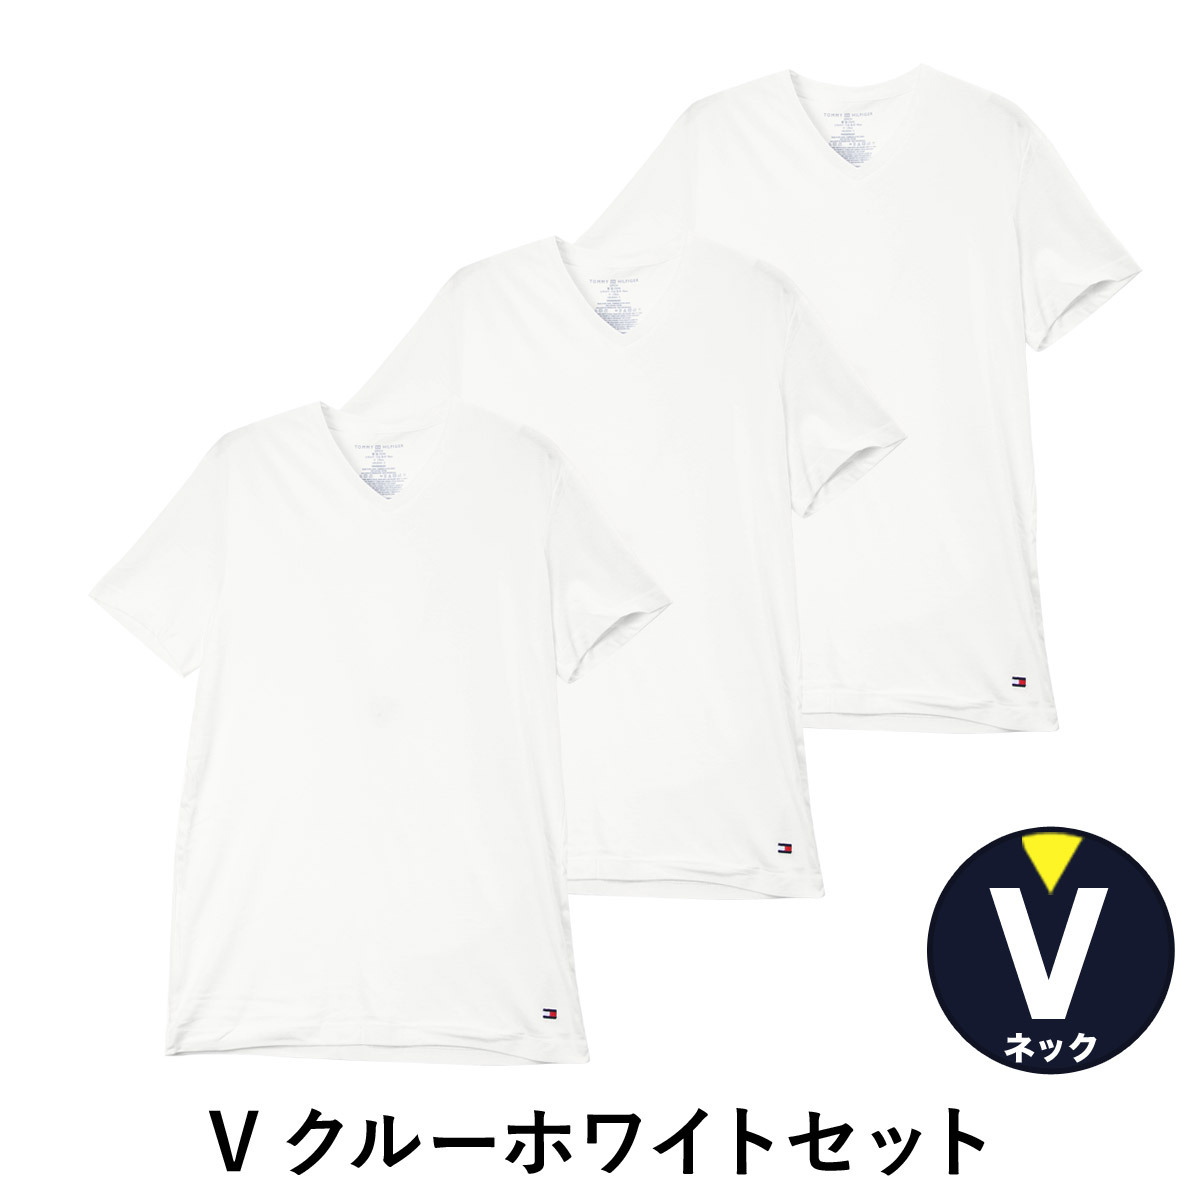 Tシャツ 半袖 3枚組 セット メンズ クルーネック 無地 Classic S/ M/ L/ XL/ 3L/4L 大きいサイズ まとめ買い ブランド  TOMMY HILFIGER :09tcr01:ブランド下着ならCrazy Ferret - 通販 - Yahoo!ショッピング